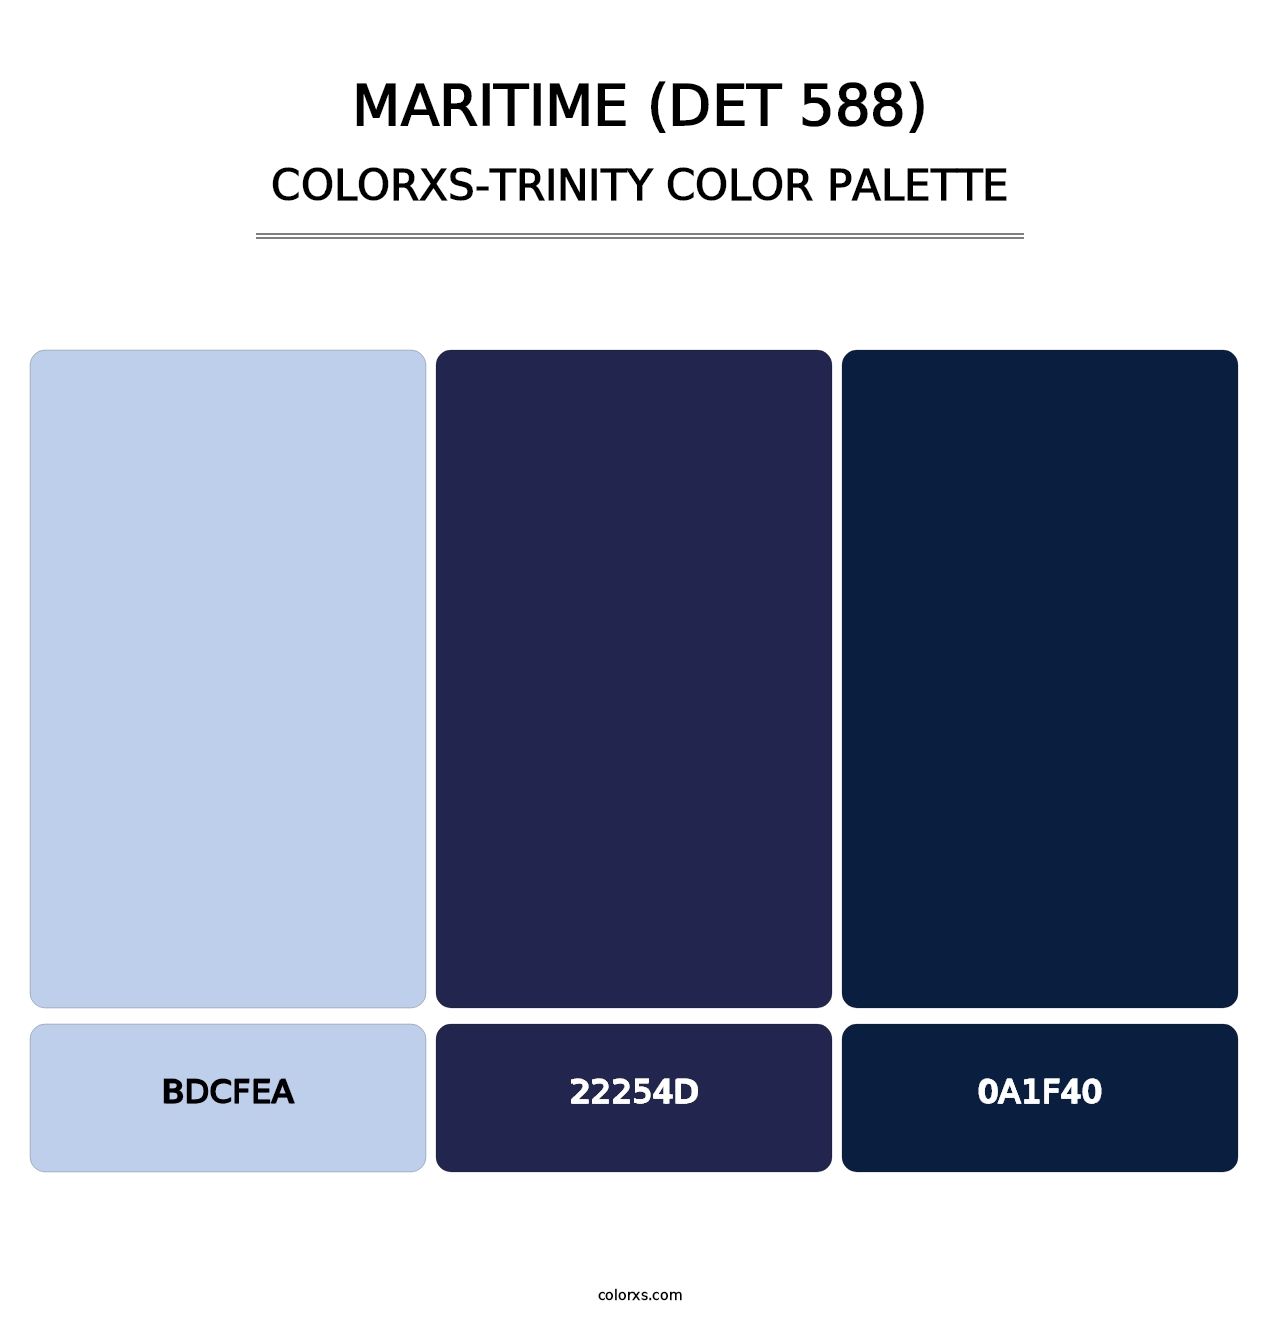 Maritime (DET 588) - Colorxs Trinity Palette